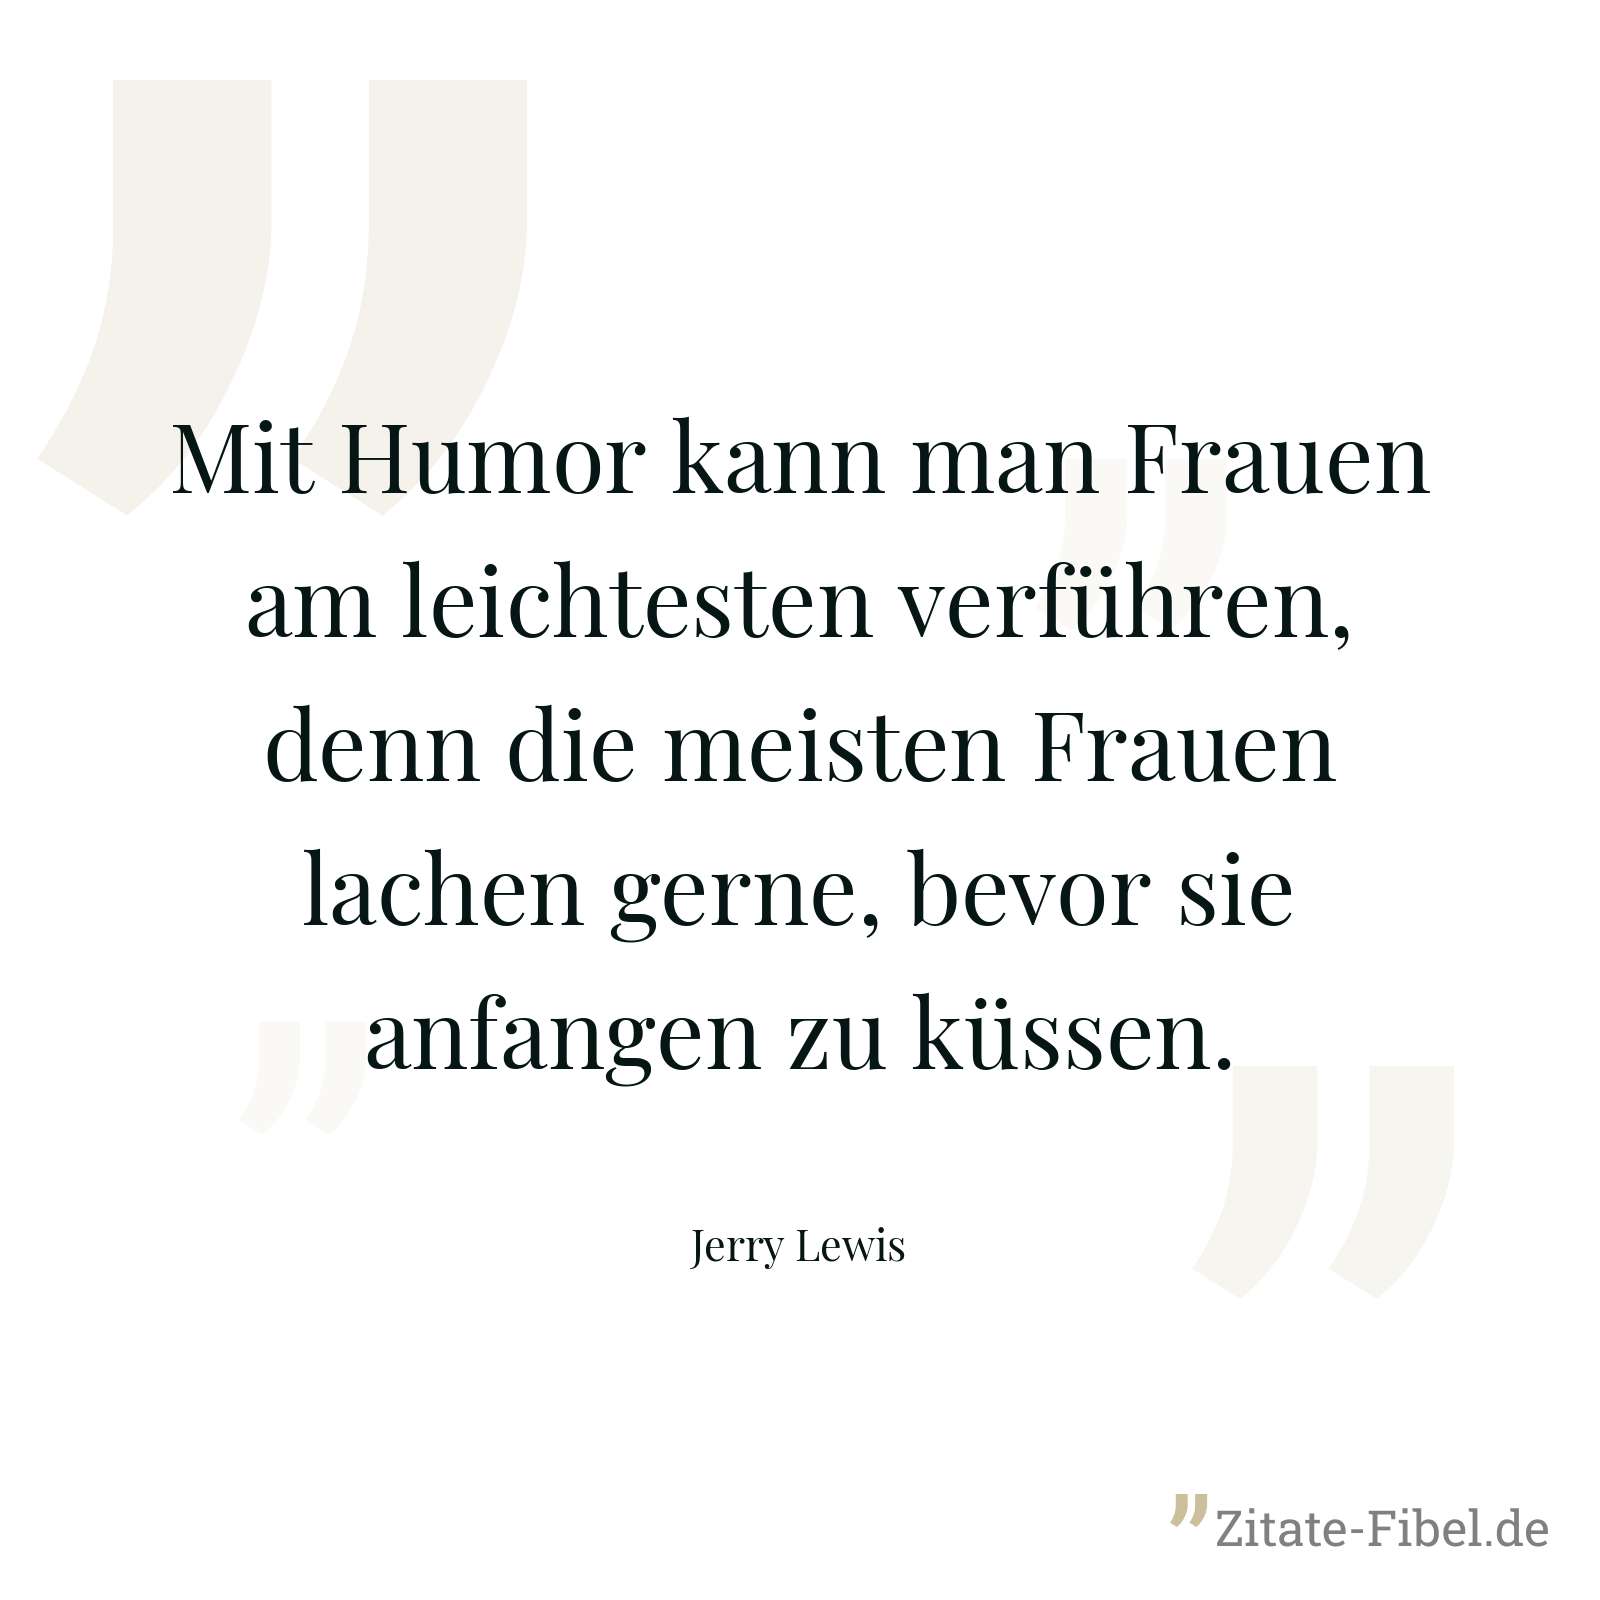 Mit Humor kann man Frauen am leichtesten verführen, denn die meisten Frauen lachen gerne, bevor sie anfangen zu küssen. - Jerry Lewis